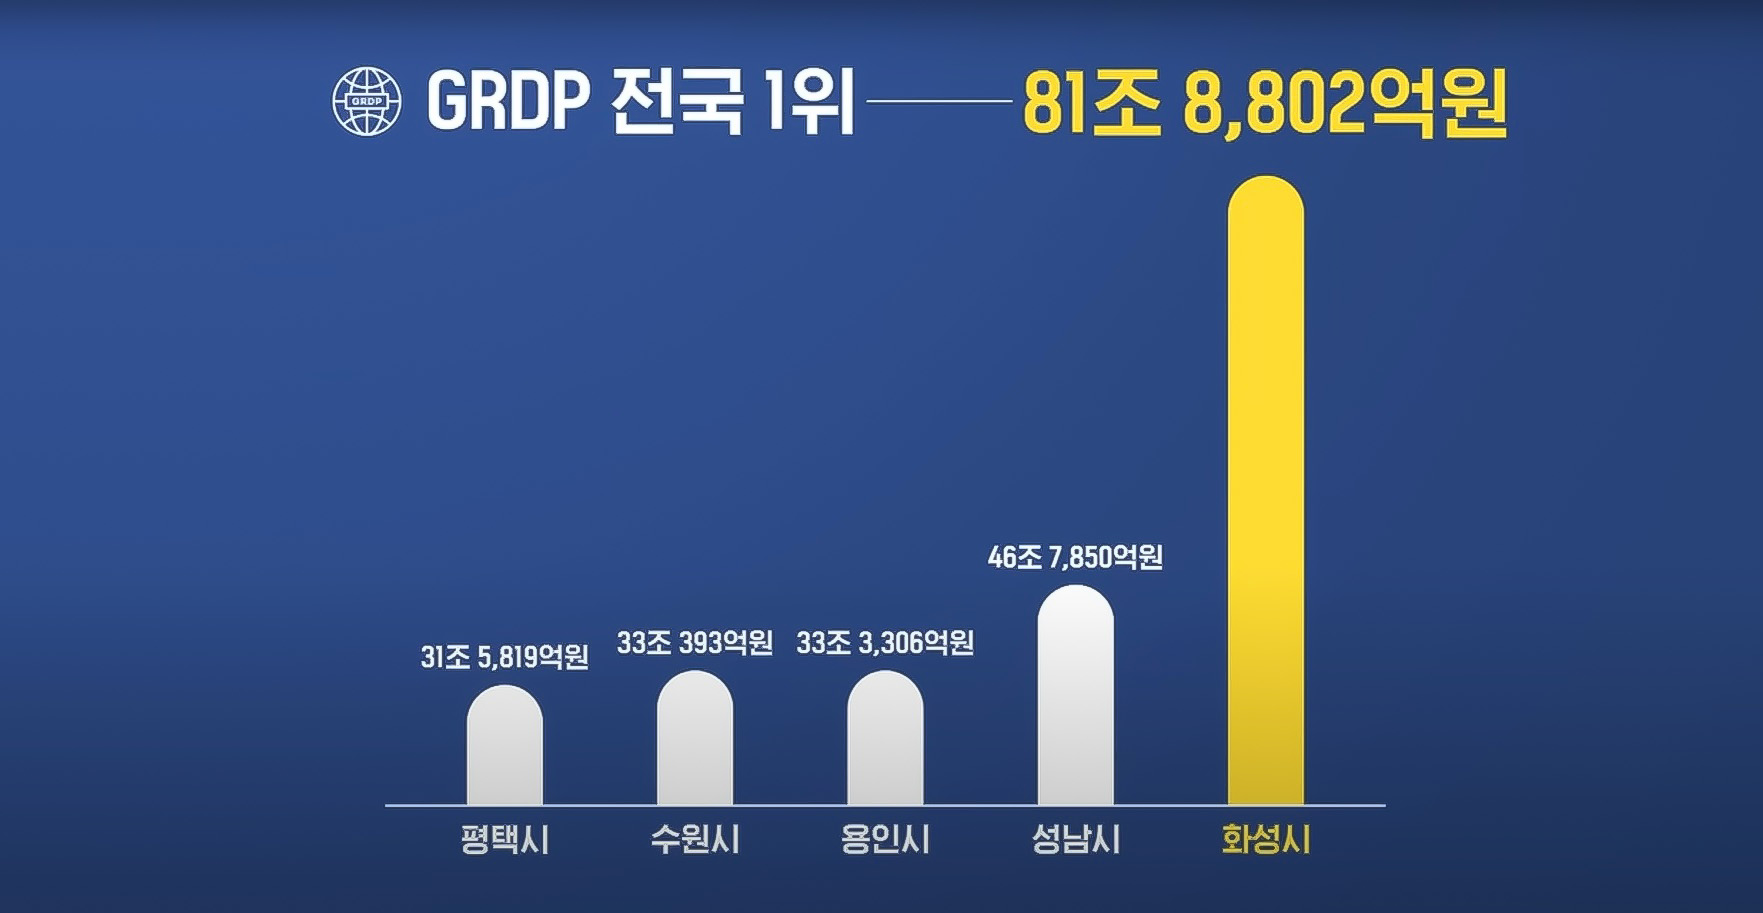 GRDP 비교분석표